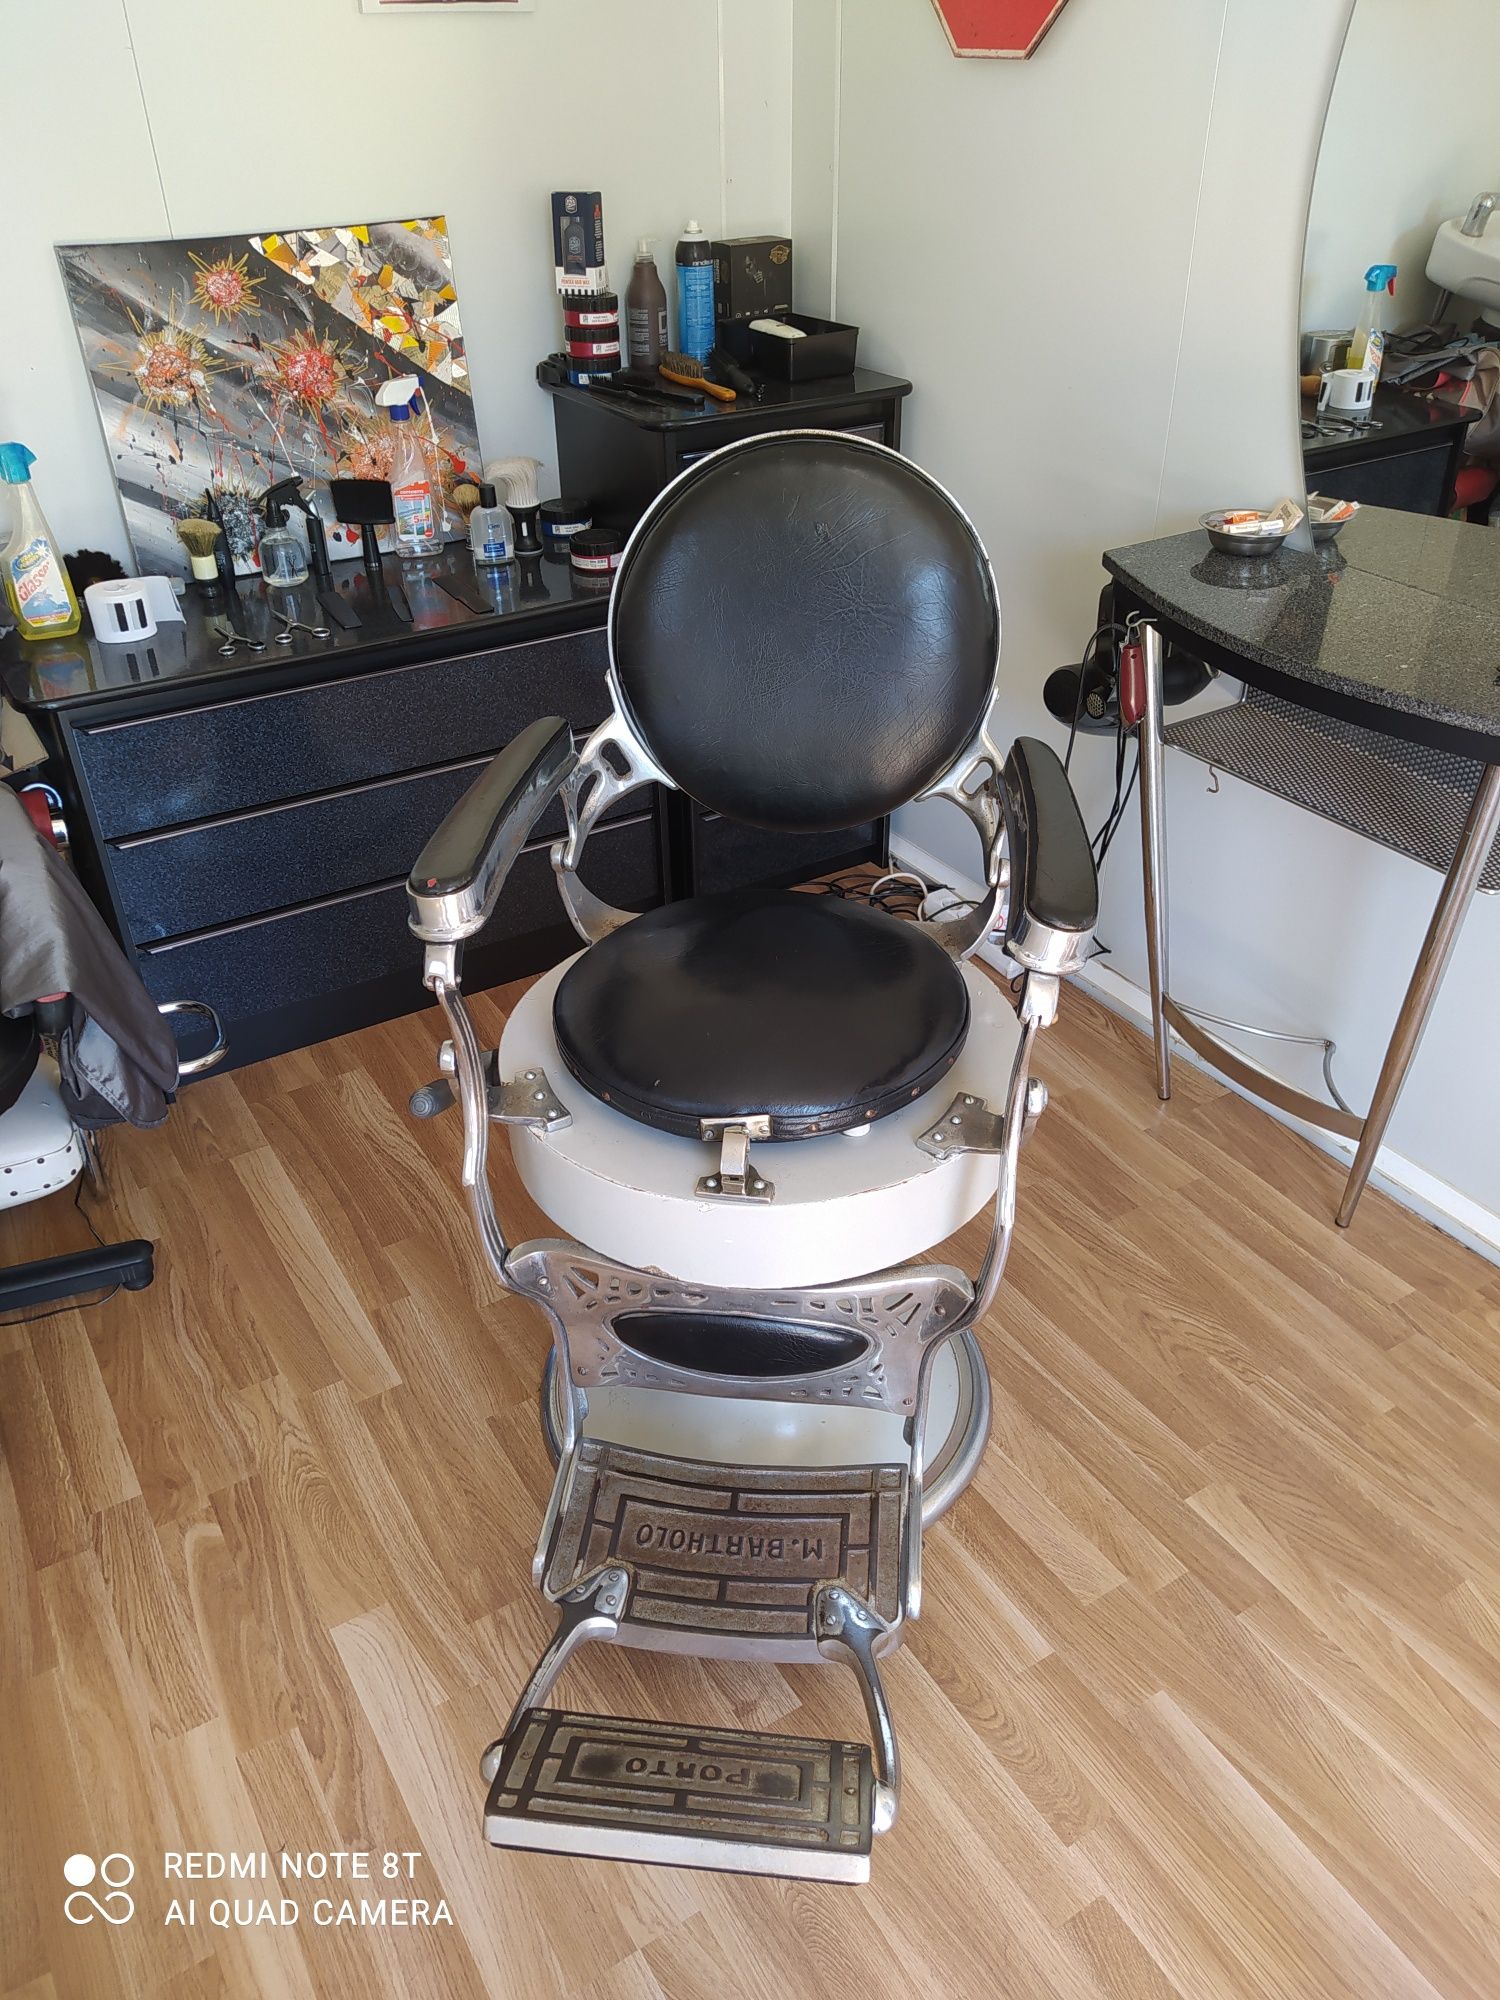 Cadeira De Barbeiro Usada - Móveis - OLX Portugal